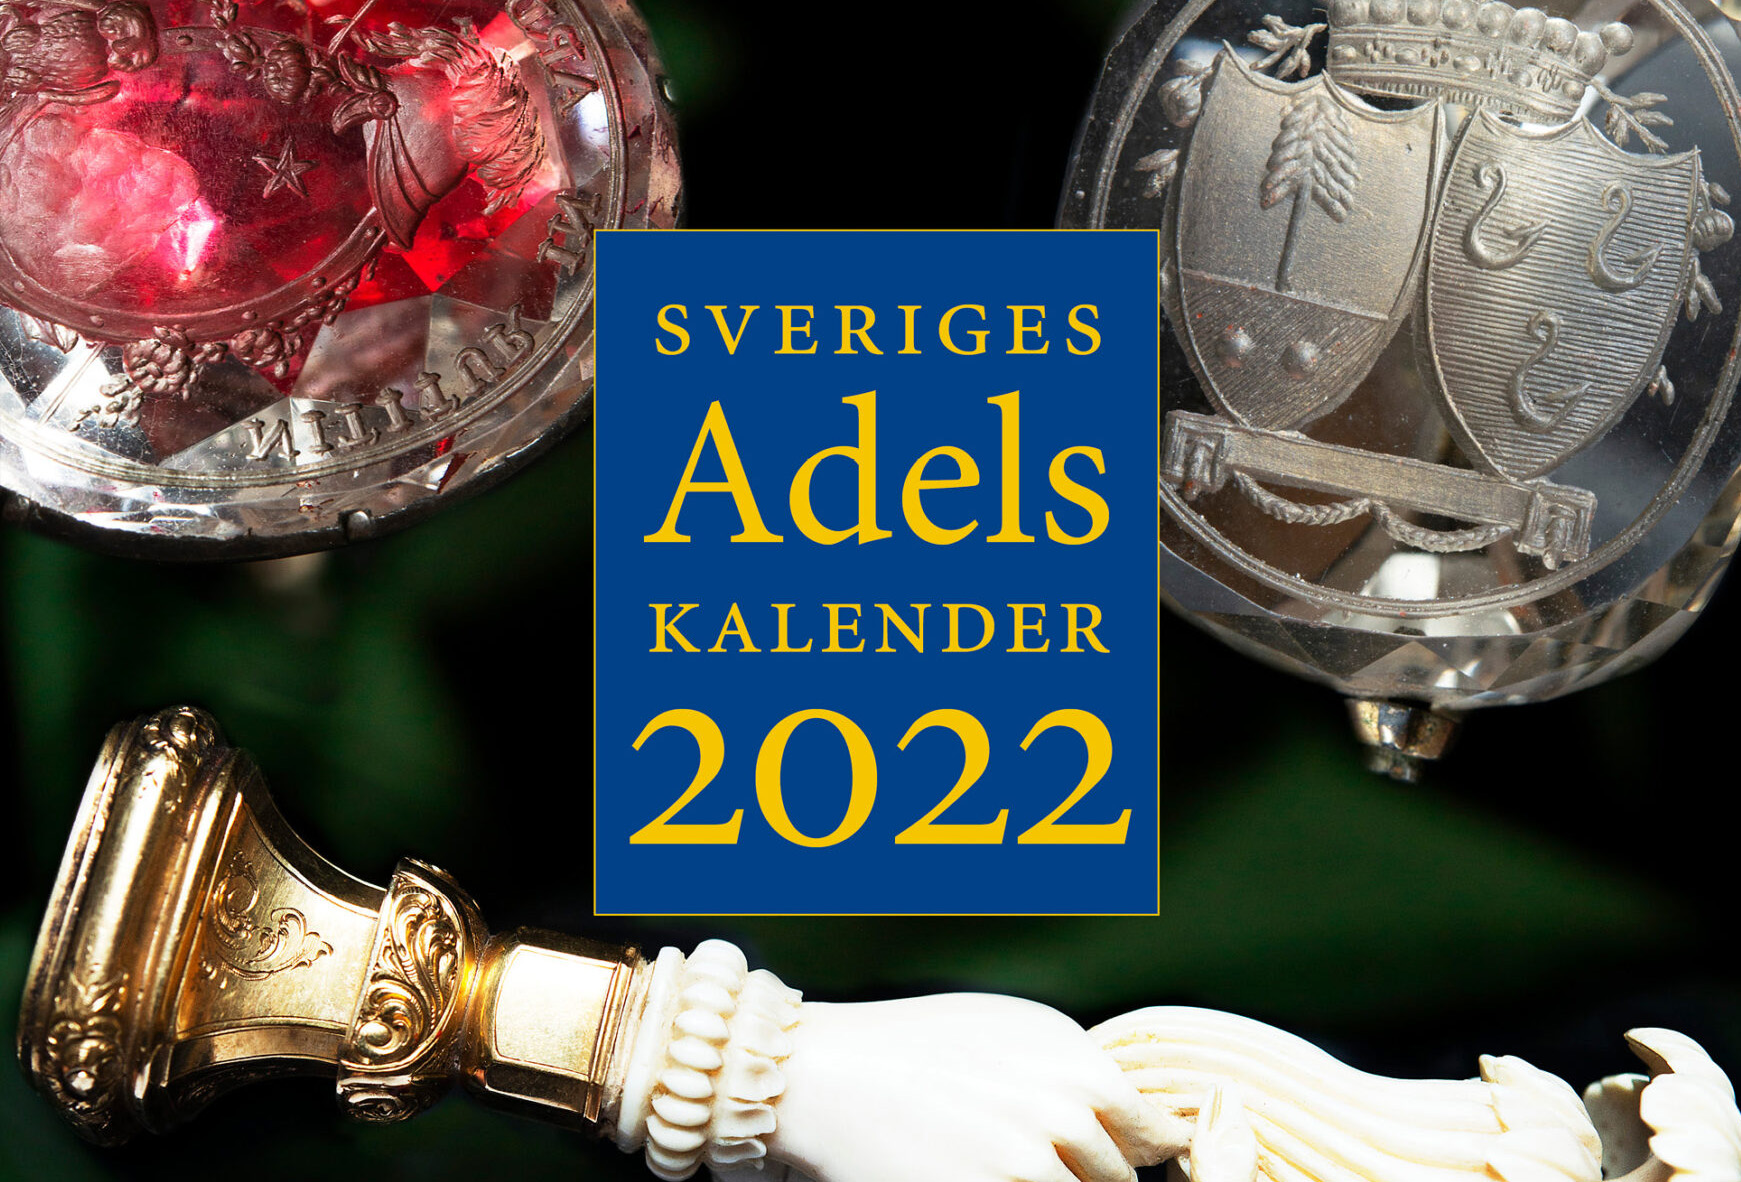 Sveriges ridderskaps och adels kalender, även känd som Sveriges Adelskalender eller kort och gott Adelskalendern. Foto: Riddarhuset 